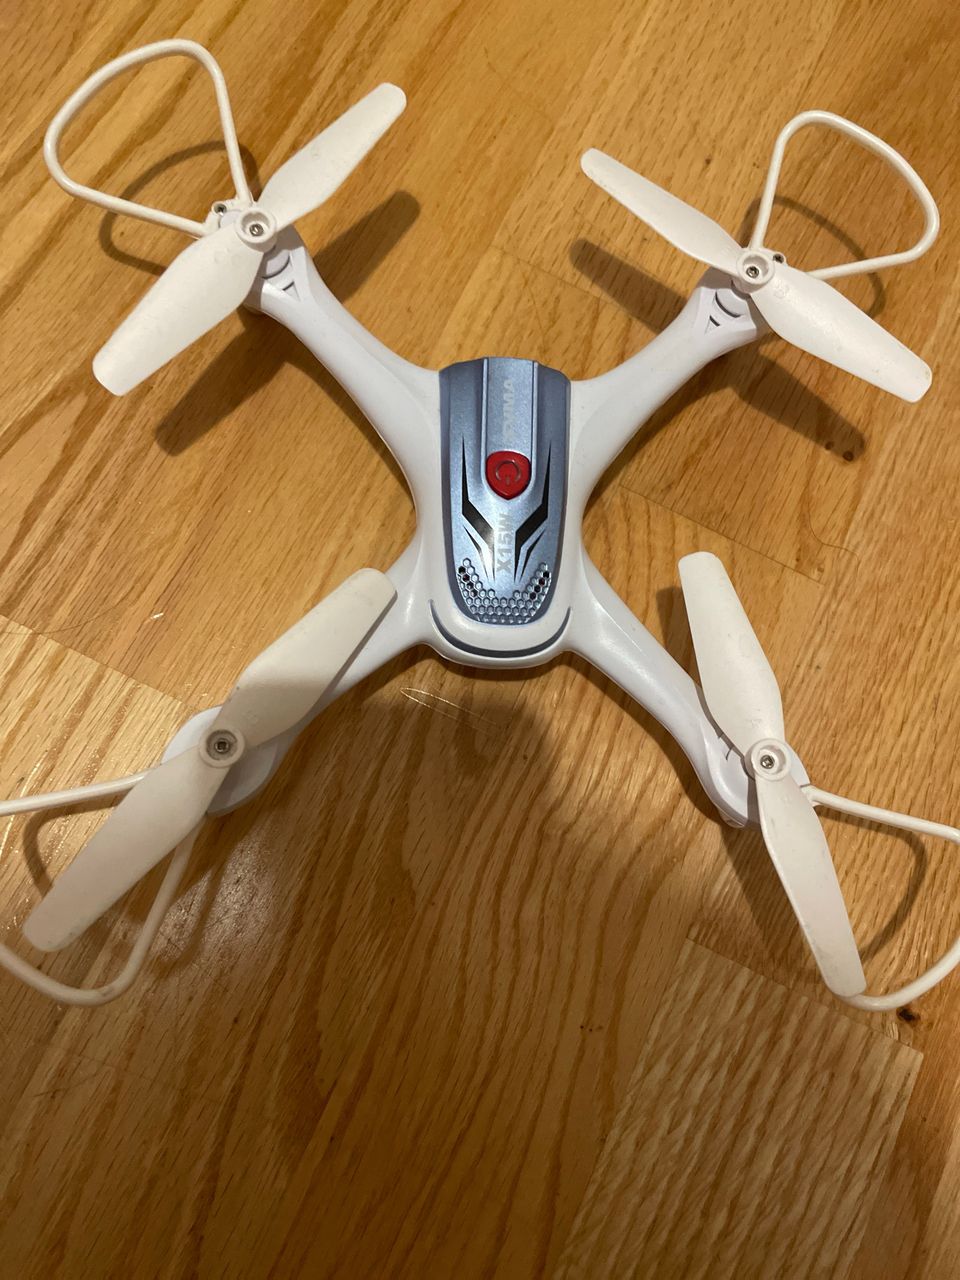 Syma X15W drone